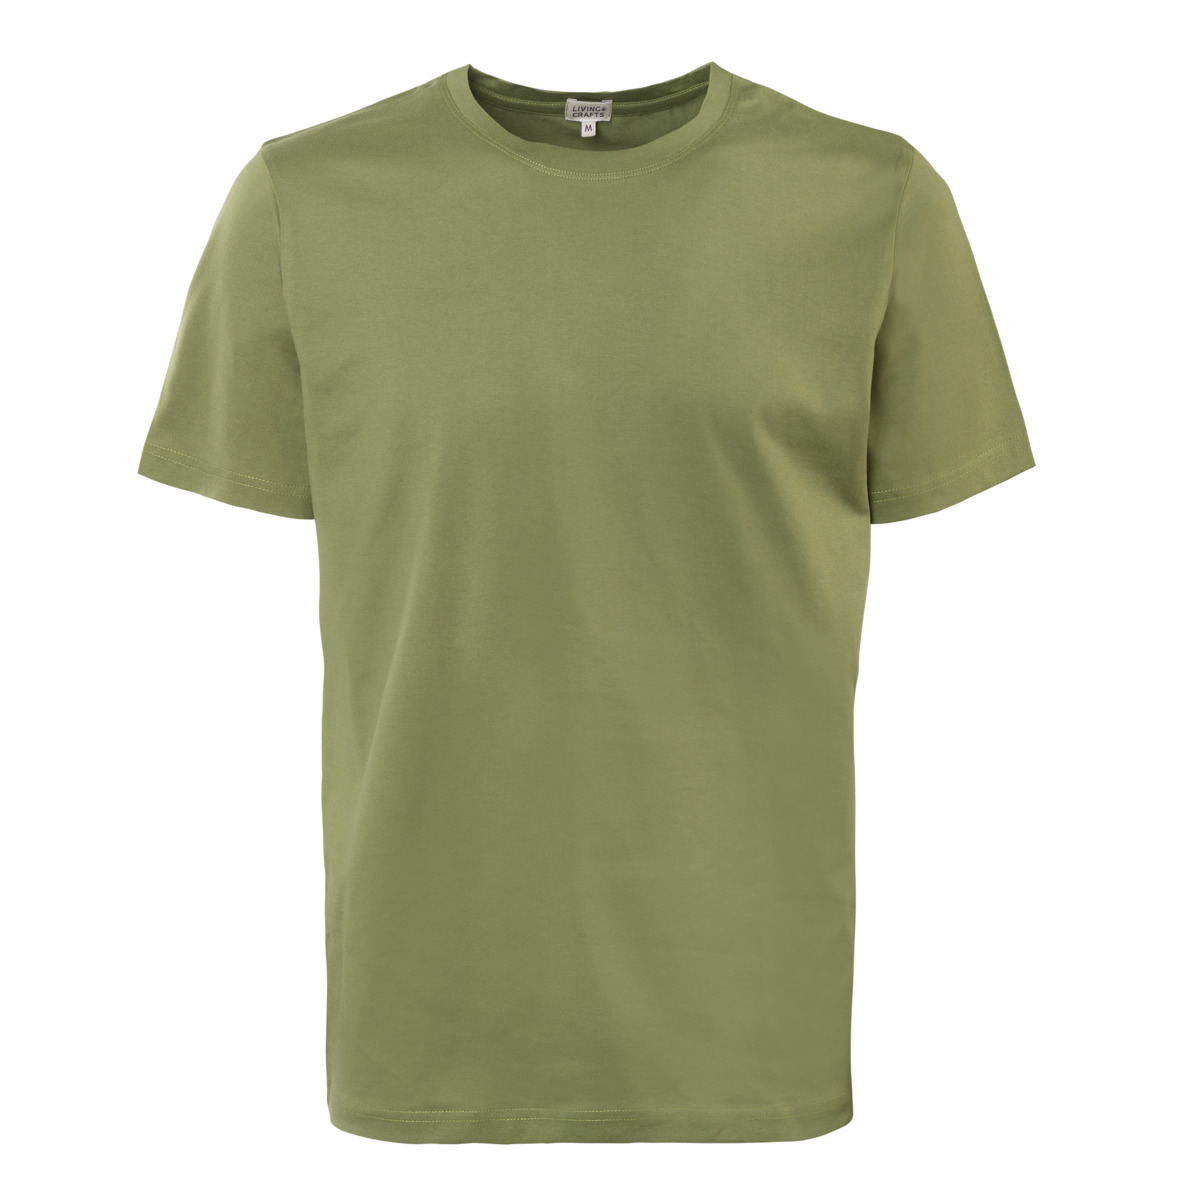 Grün T-Shirt, NORMAN